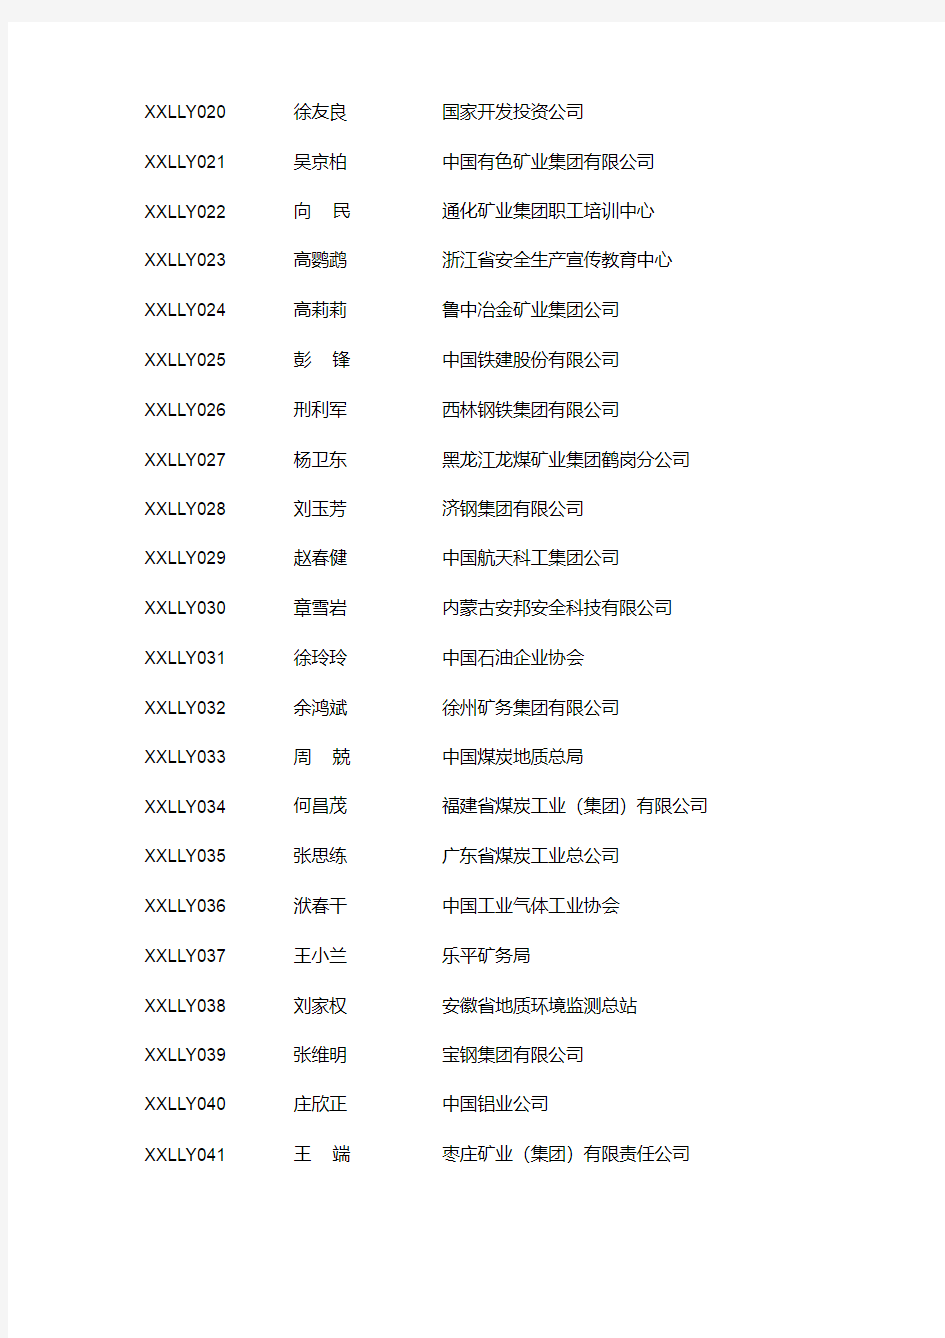 中国安全生产协会首批信息联络员名单